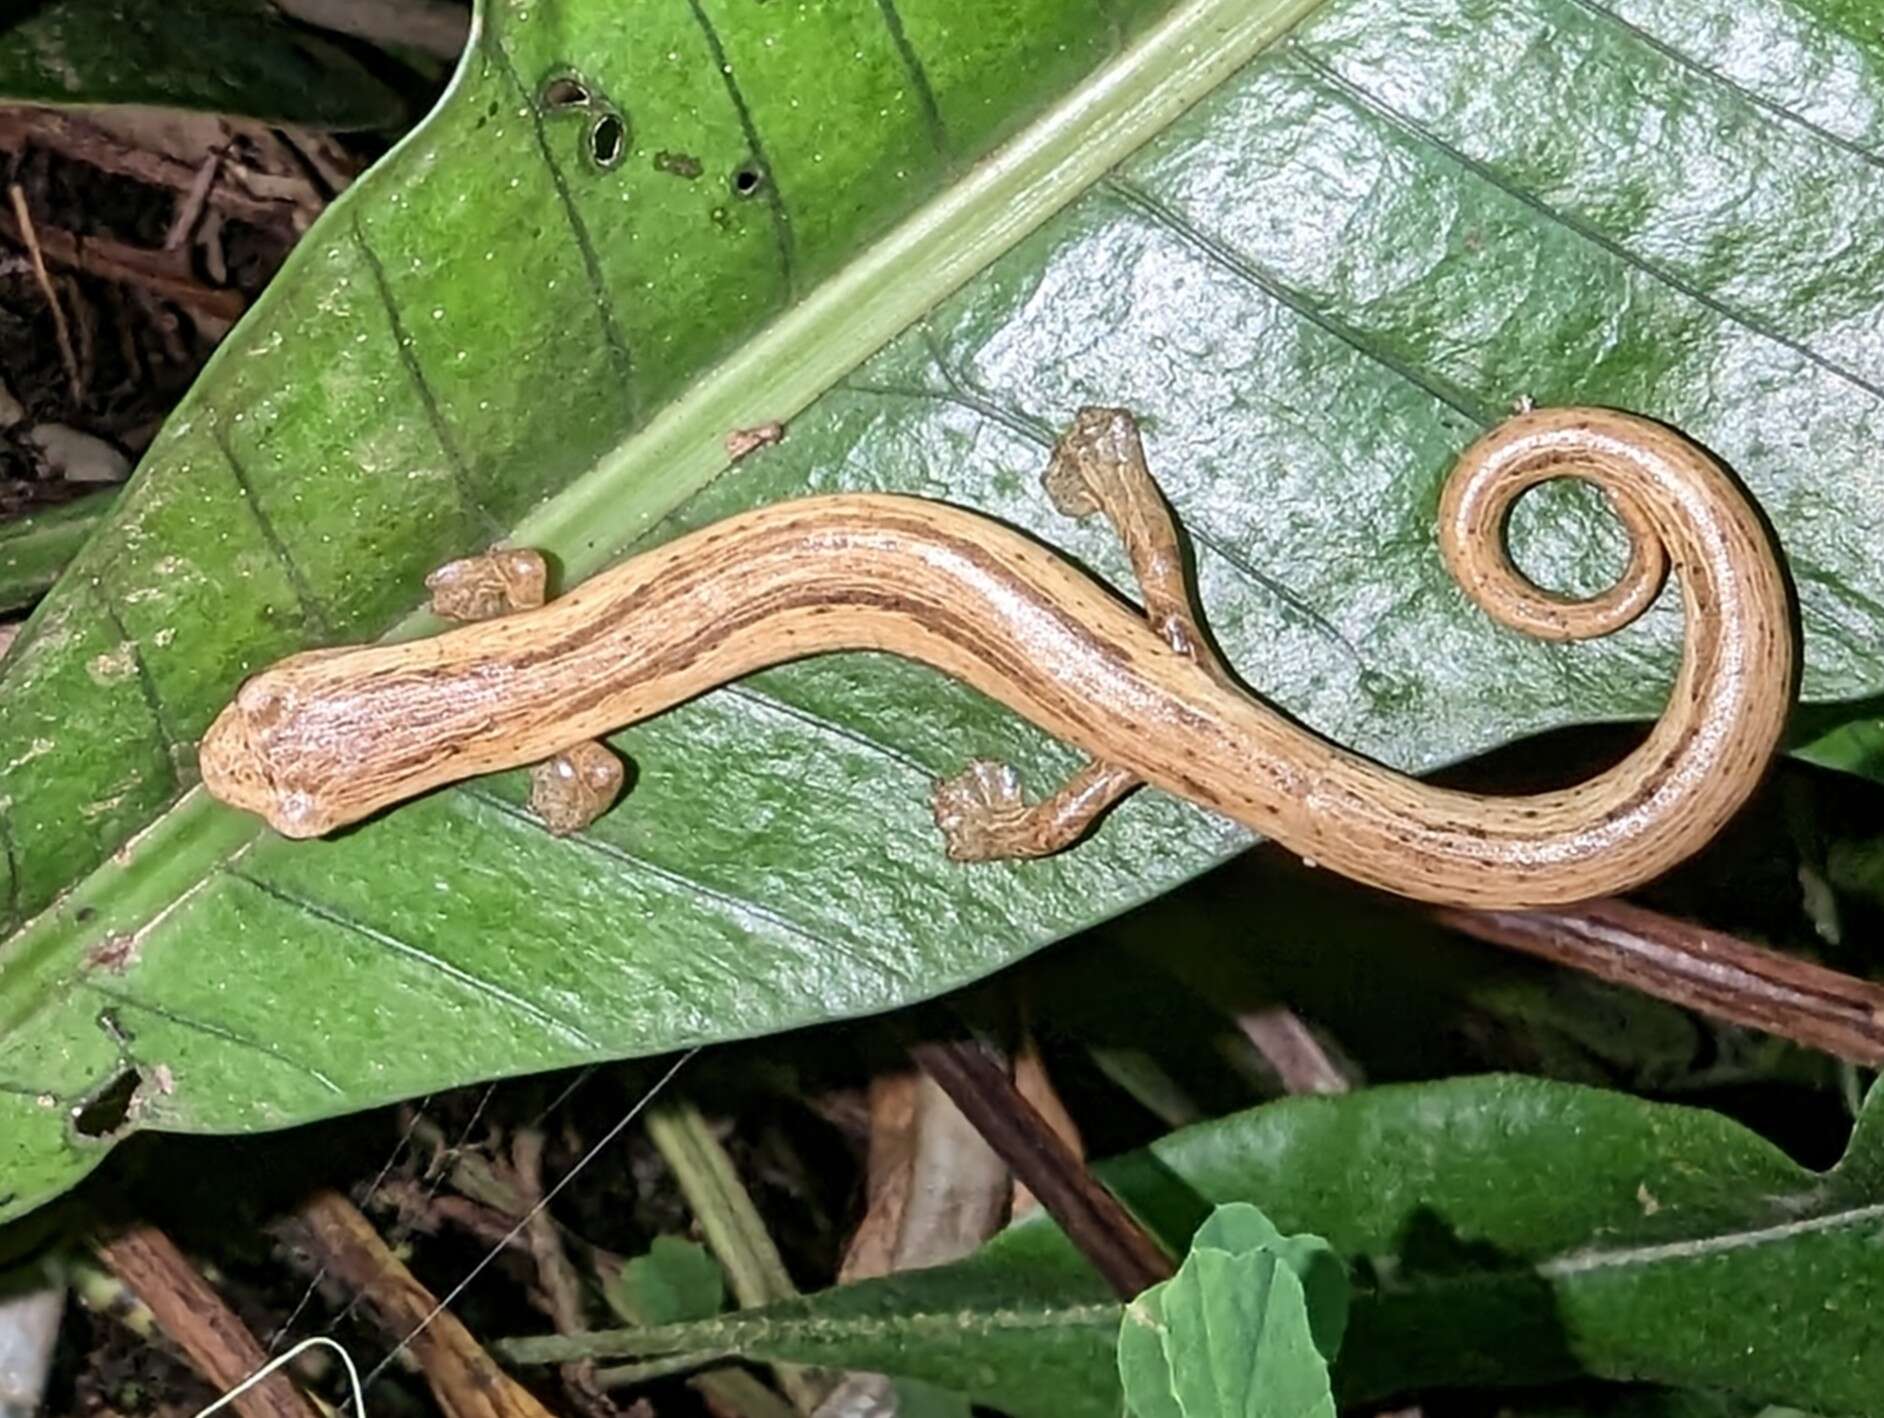 Image of Cukra Climbing Salamander